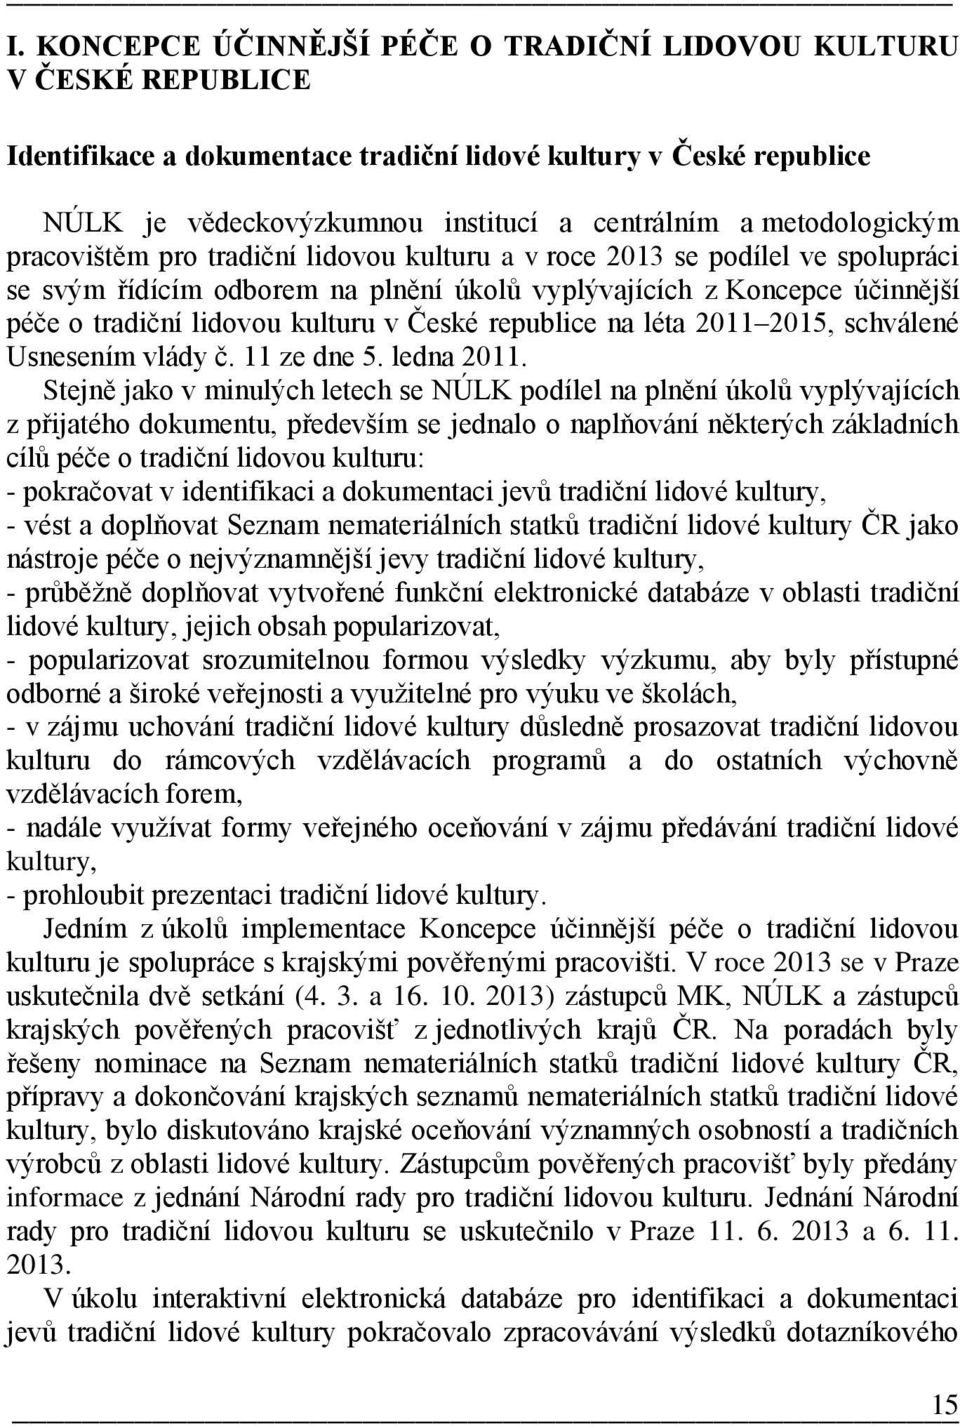 kulturu v České republice na léta 2011 2015, schválené Usnesením vlády č. 11 ze dne 5. ledna 2011.